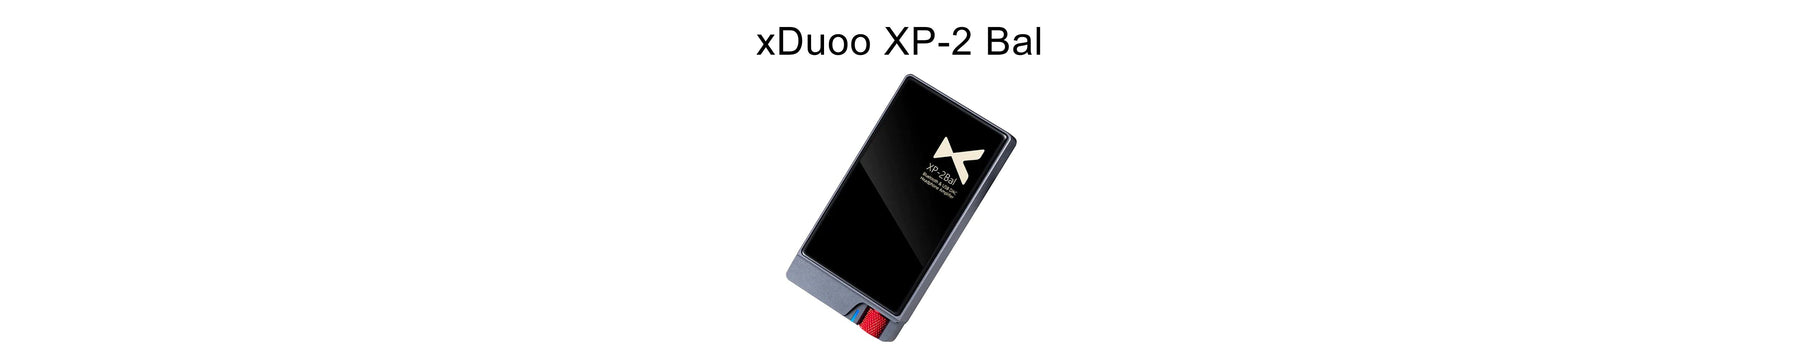 xDuoo Announces XP-2 Bal: Premium HD Balanced Bluetooth DAC & Headphone Amplifier